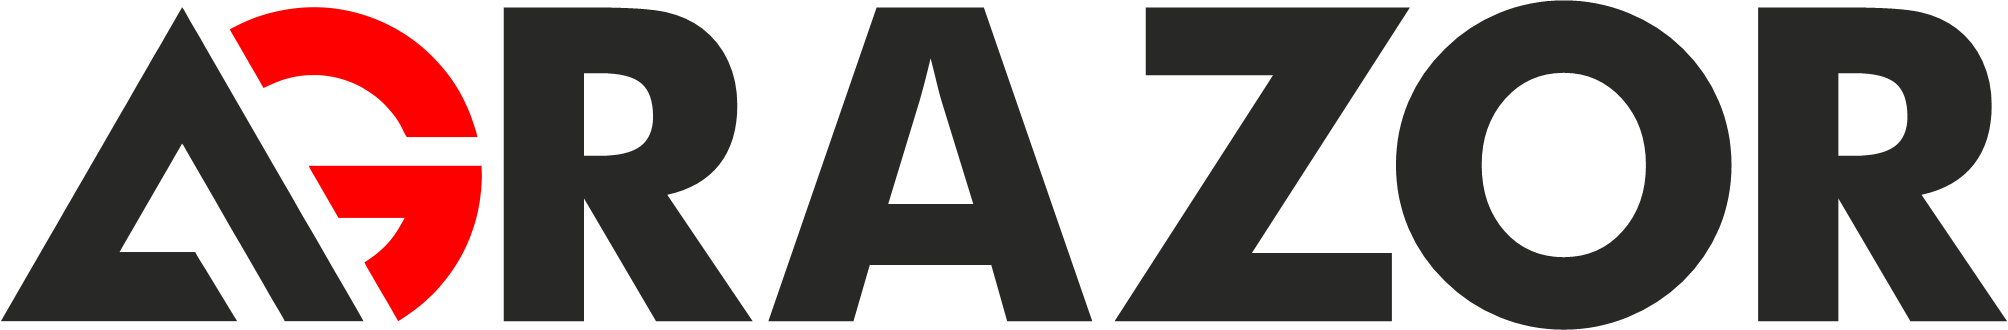 Agrazor Logo